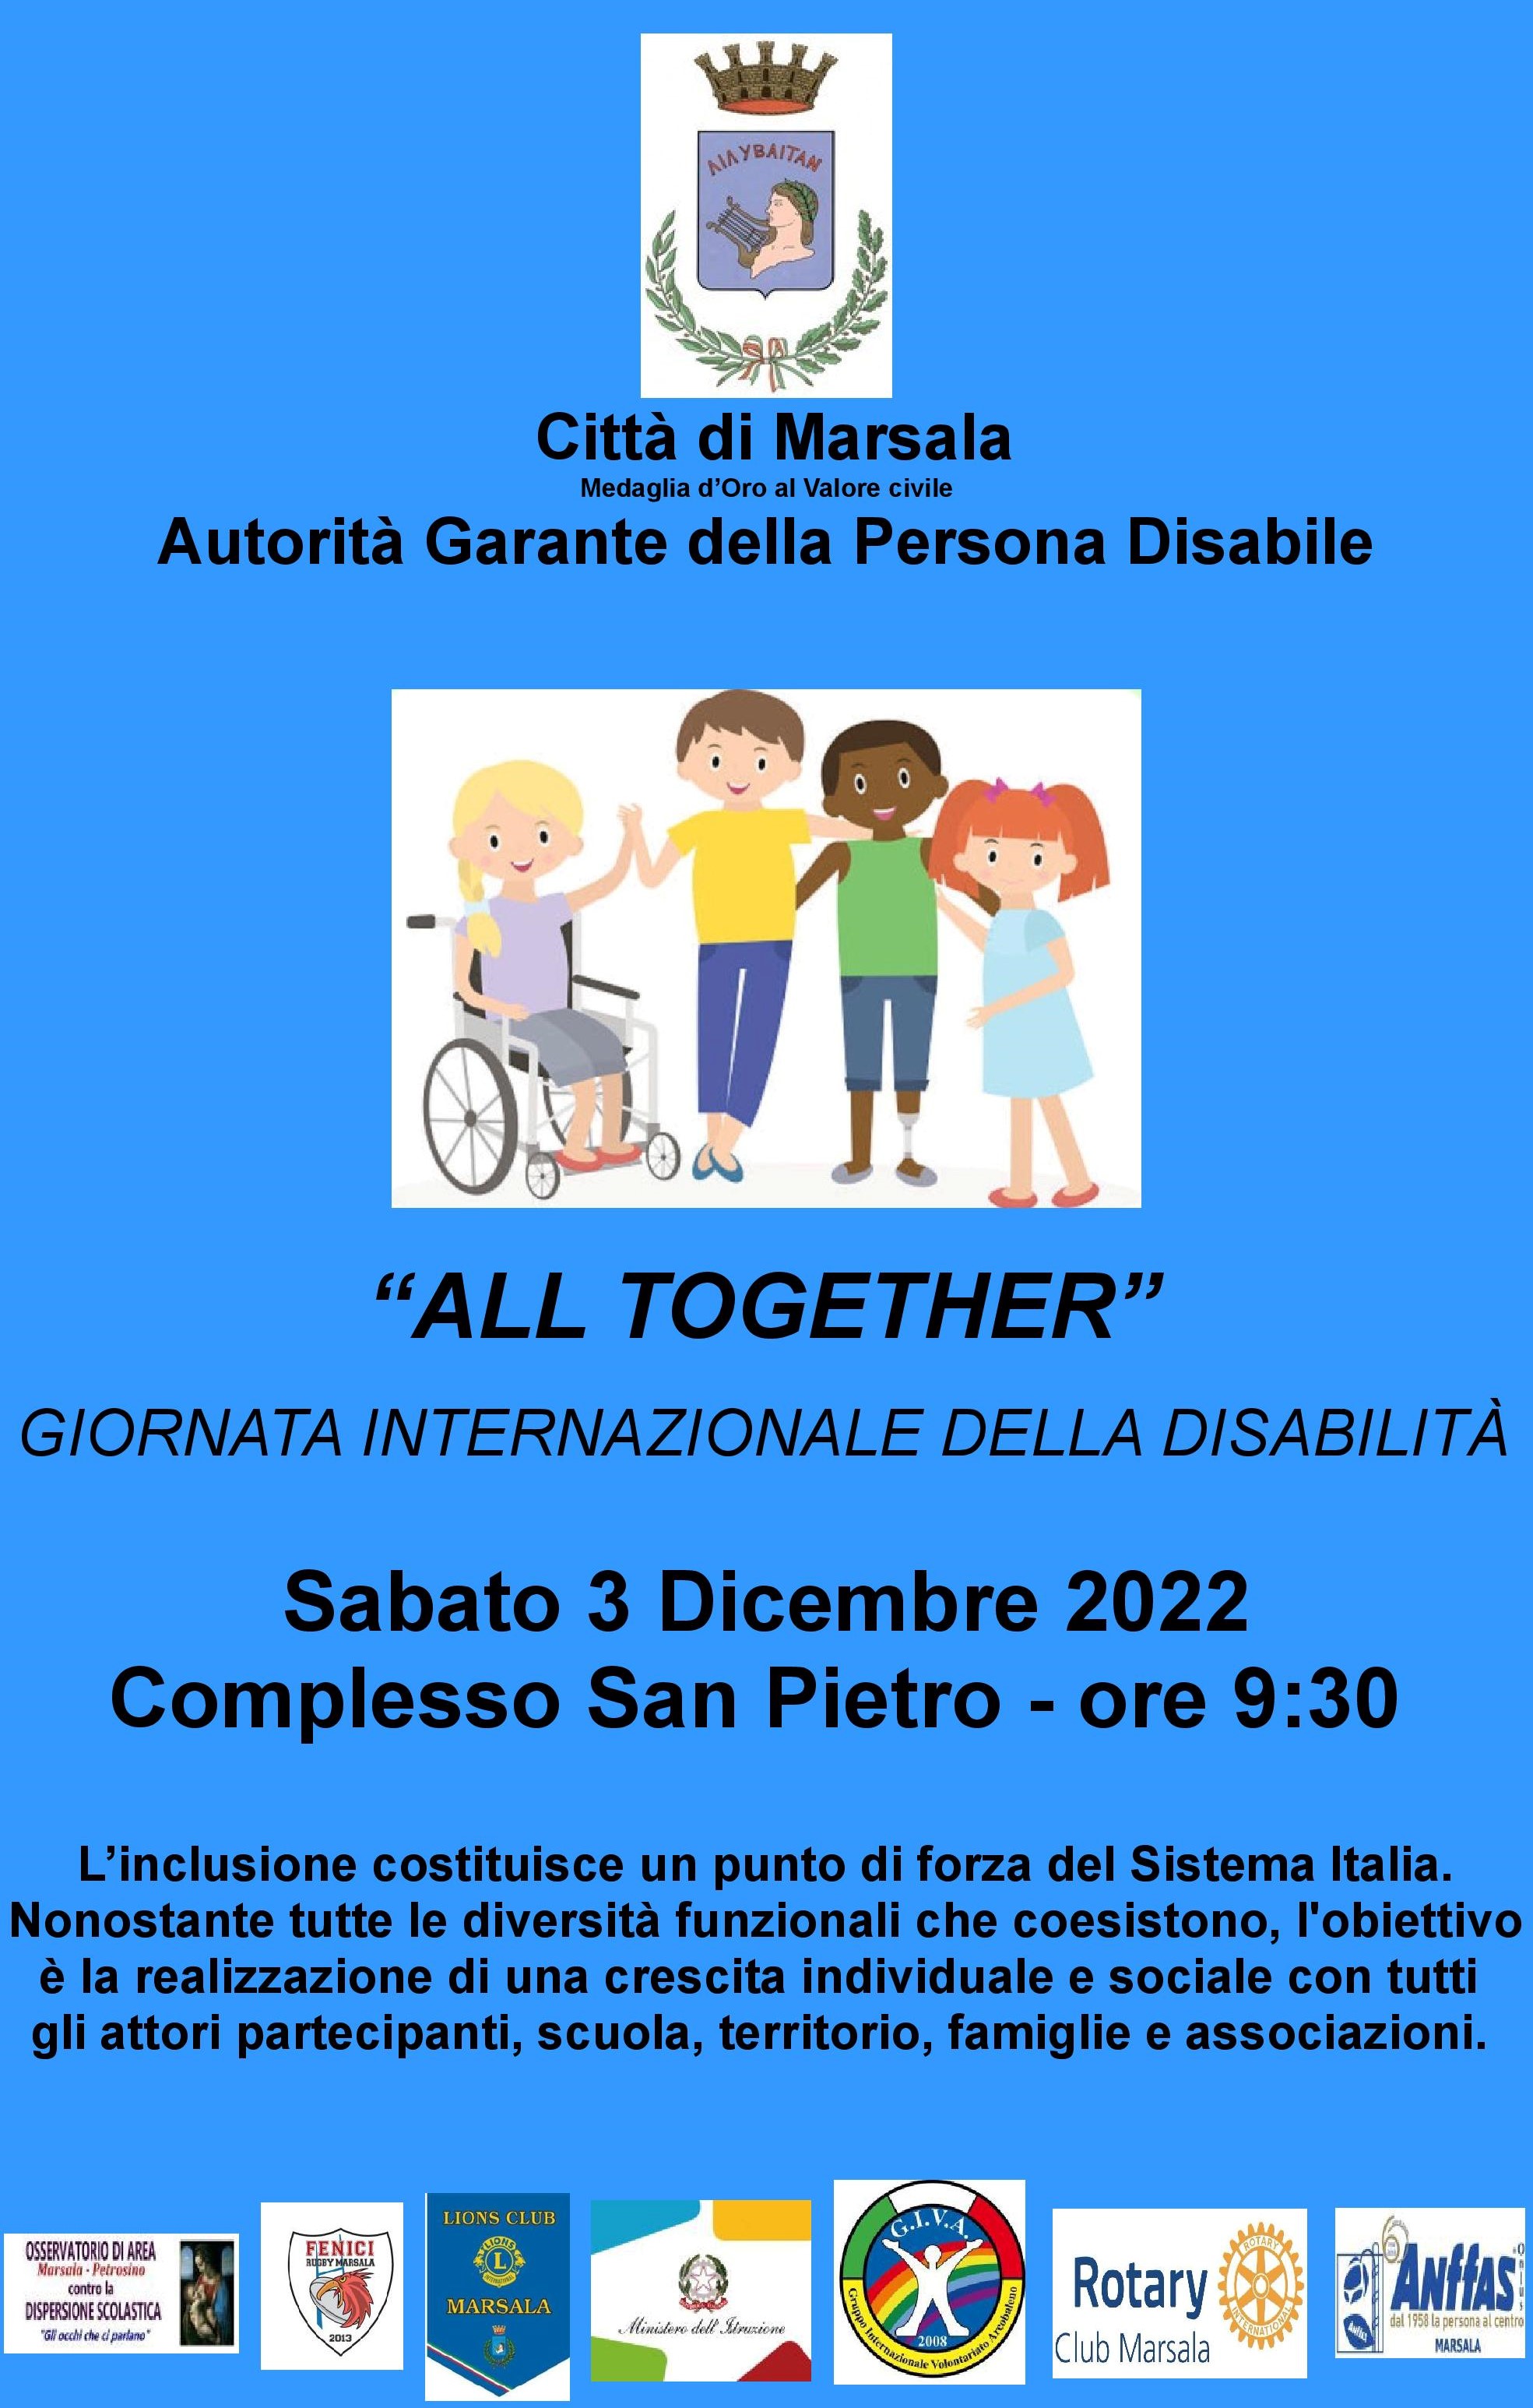 Giornata internazionale della disabilità - da marsala il messaggio a volgere lo sguardo oltre le diversità